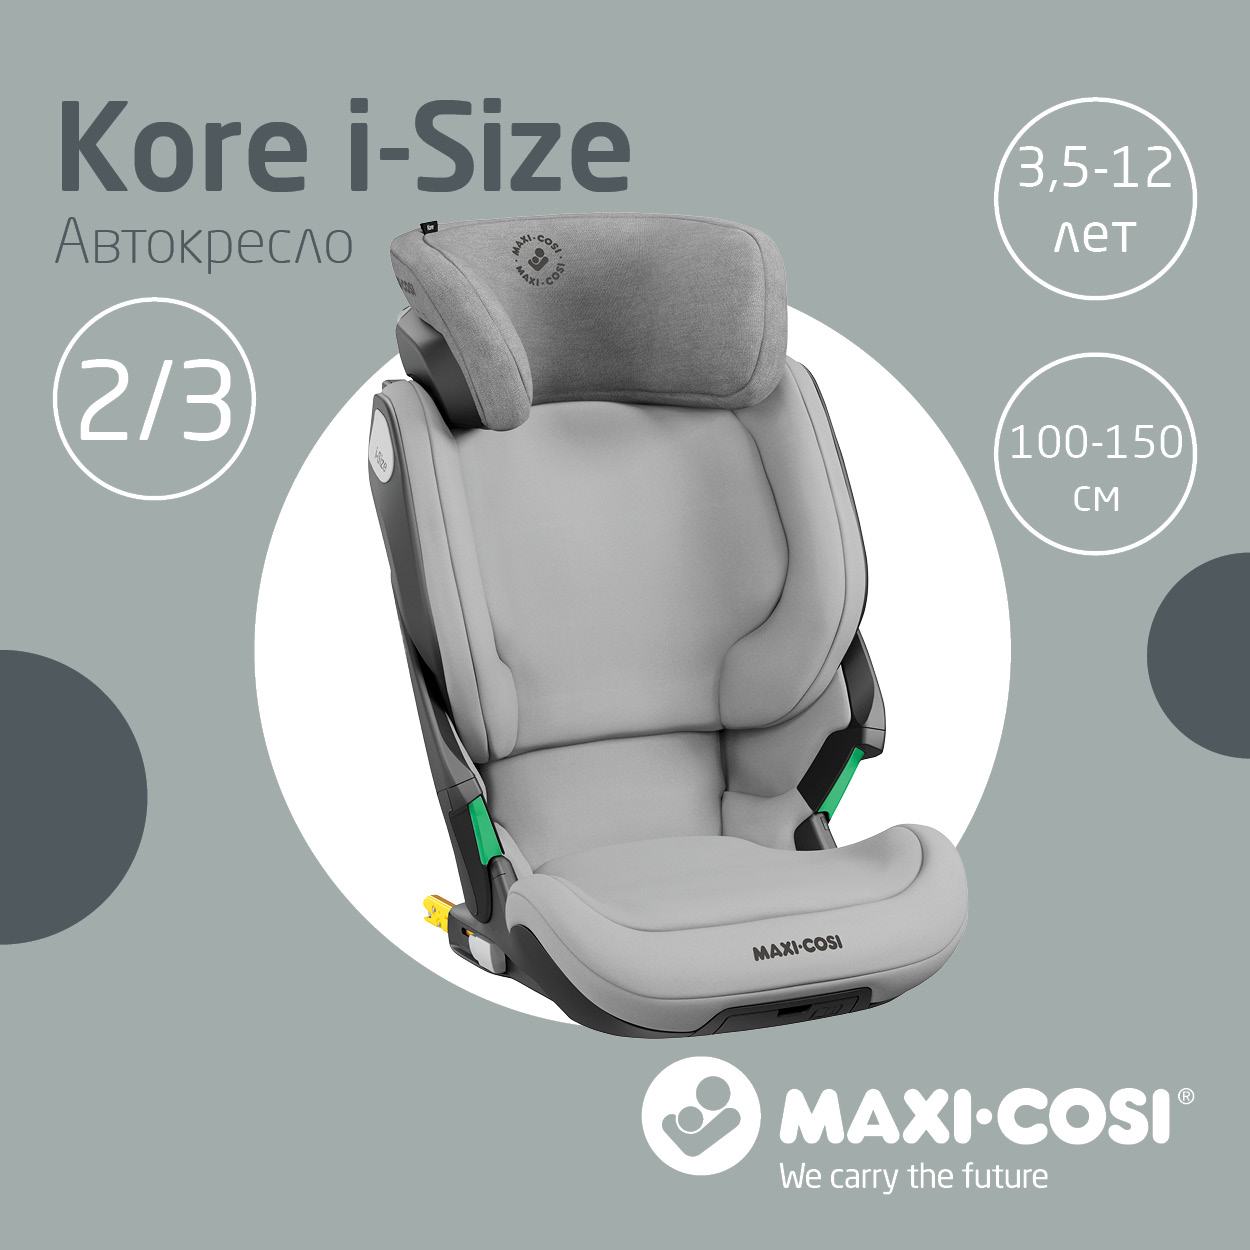 Автокресло Maxi-Cosi Kore i-Size 15-36 кг Authentic Grey Серый автокресло maxi cosi kore pro i size 15 36 кг authentic red красный